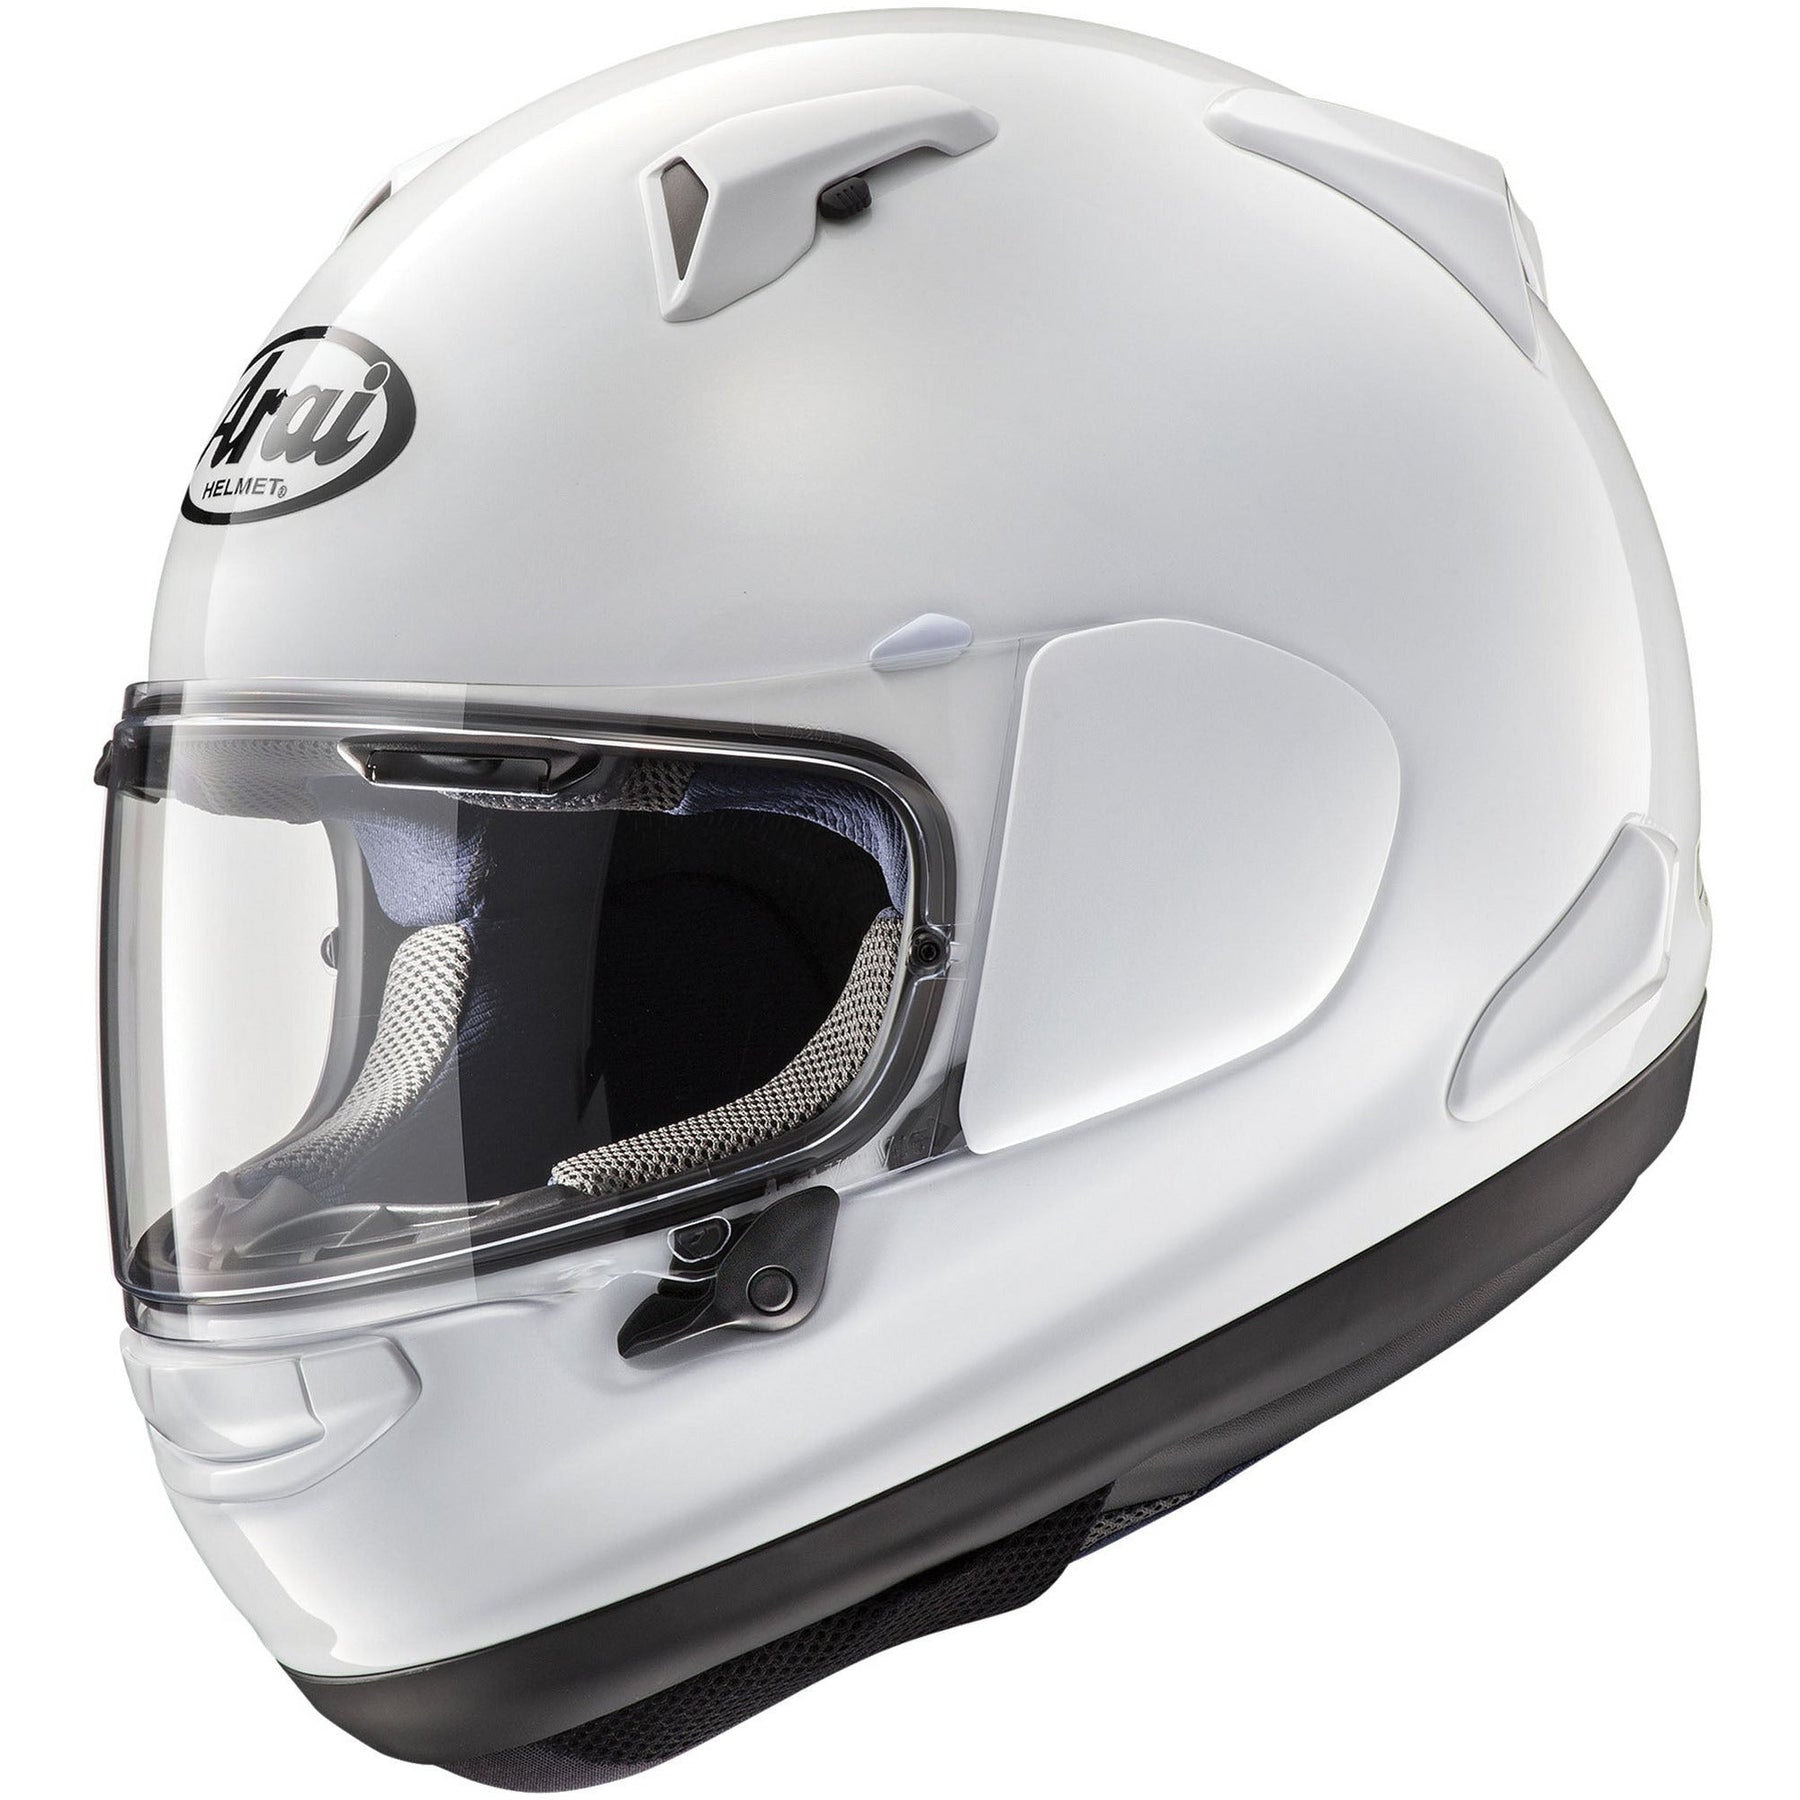 Quantum-X Helmet (White)